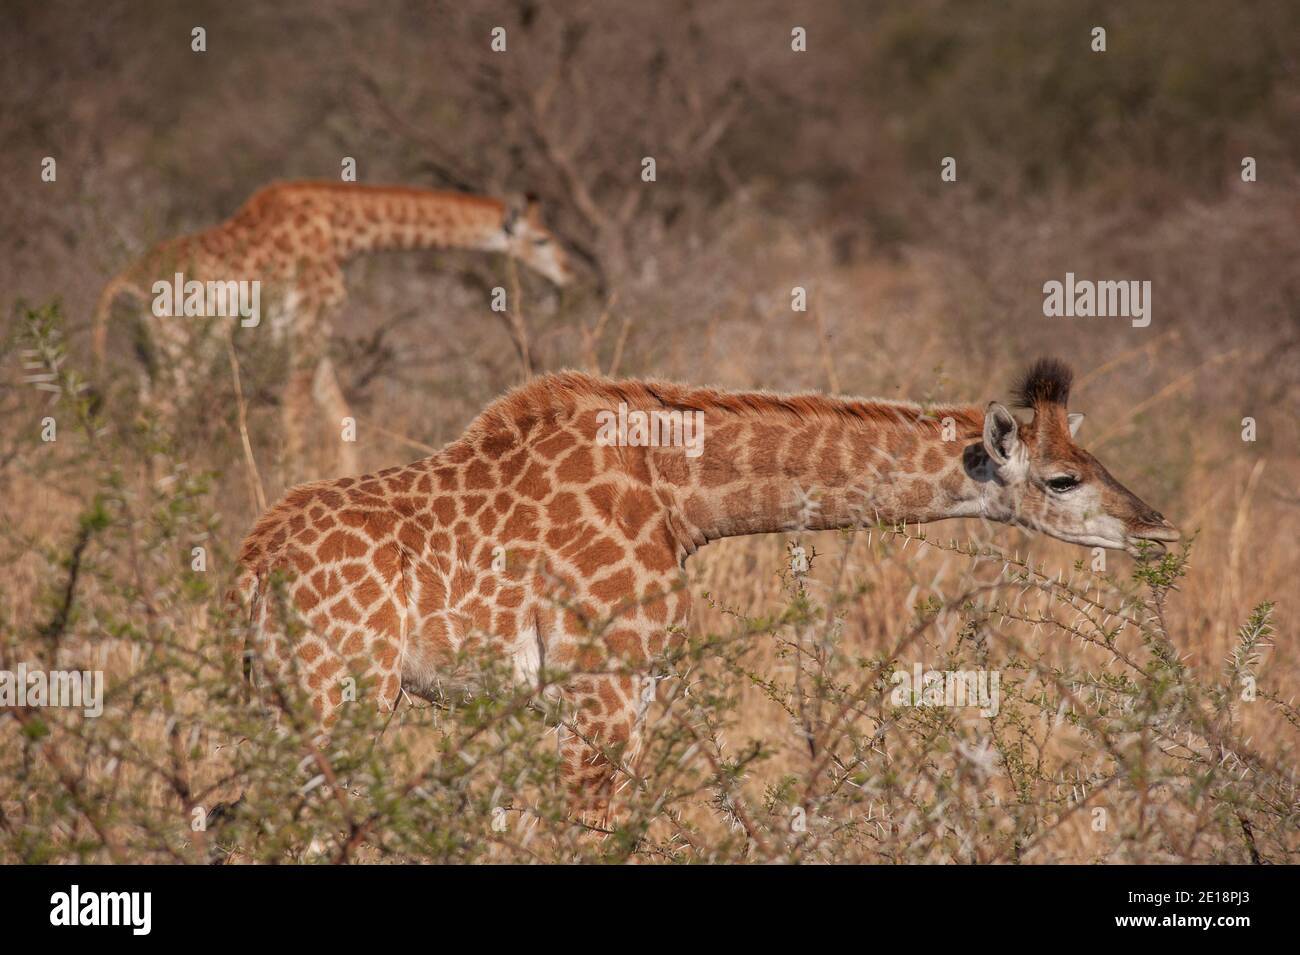 South African giraffe or Cape giraffe (Giraffa camelopardalis giraffa), Kwa Zulu Natal Stock Photo